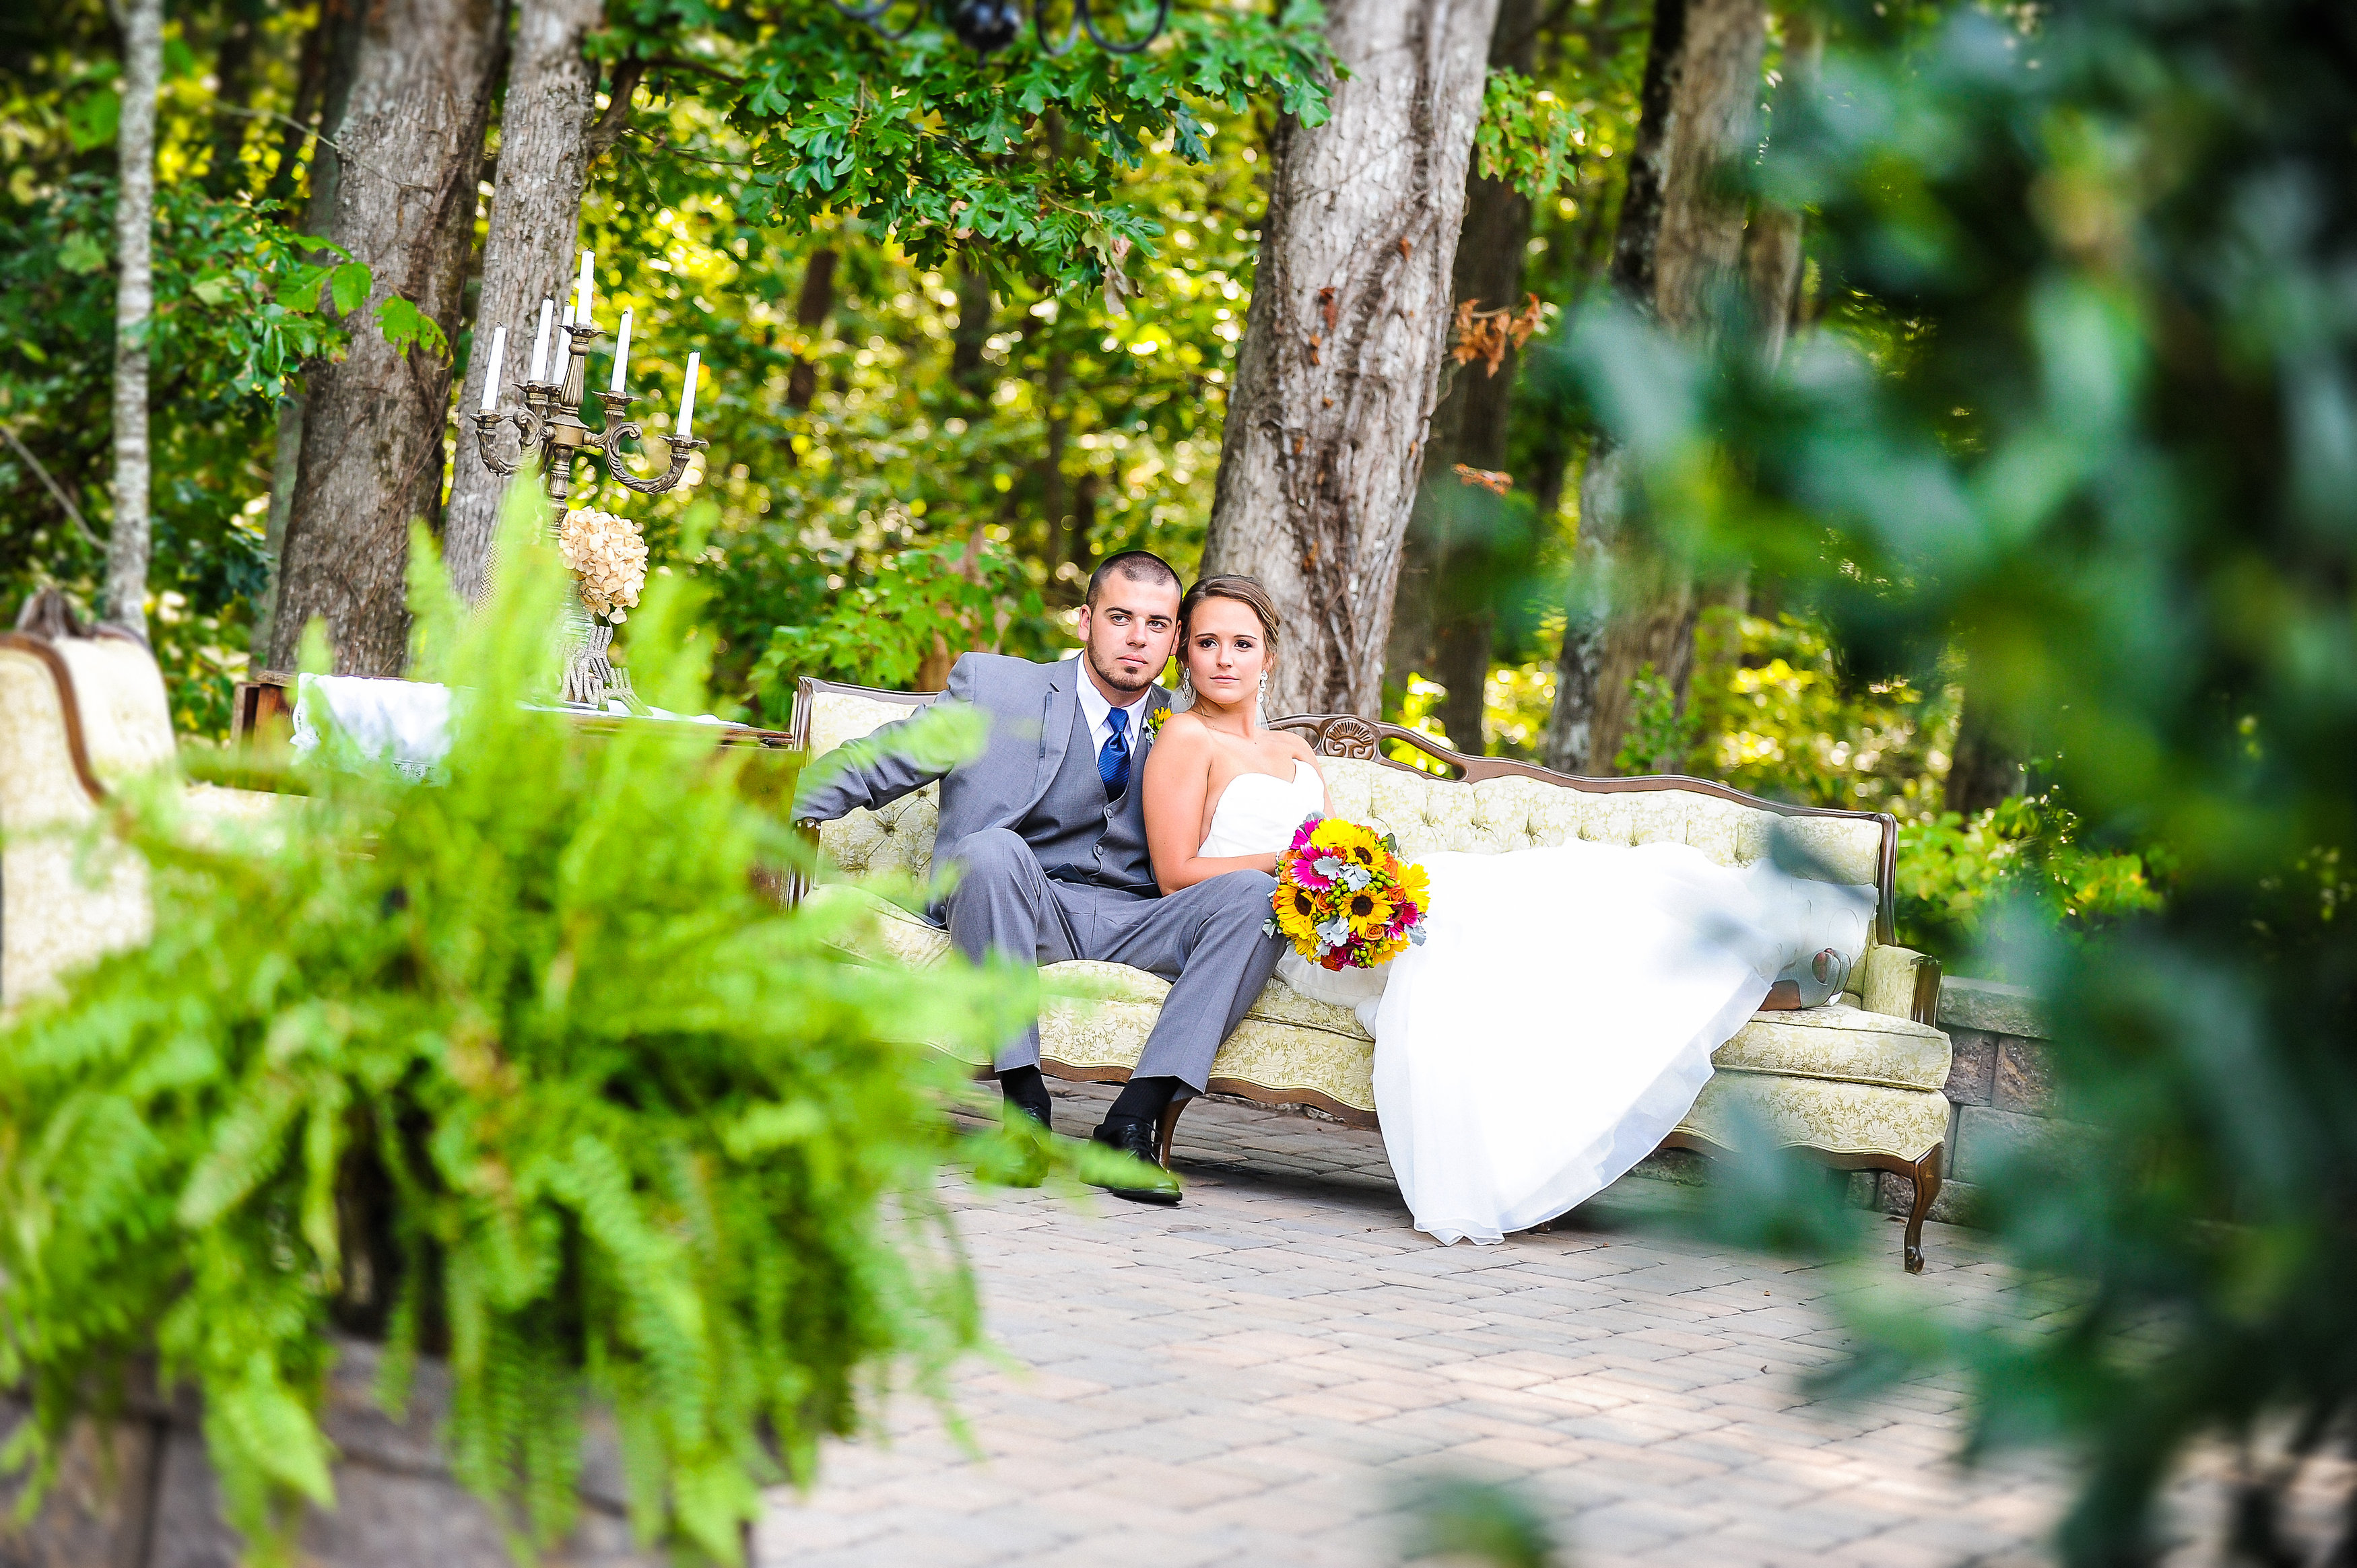 Romantic Outdoor Wedding Venue